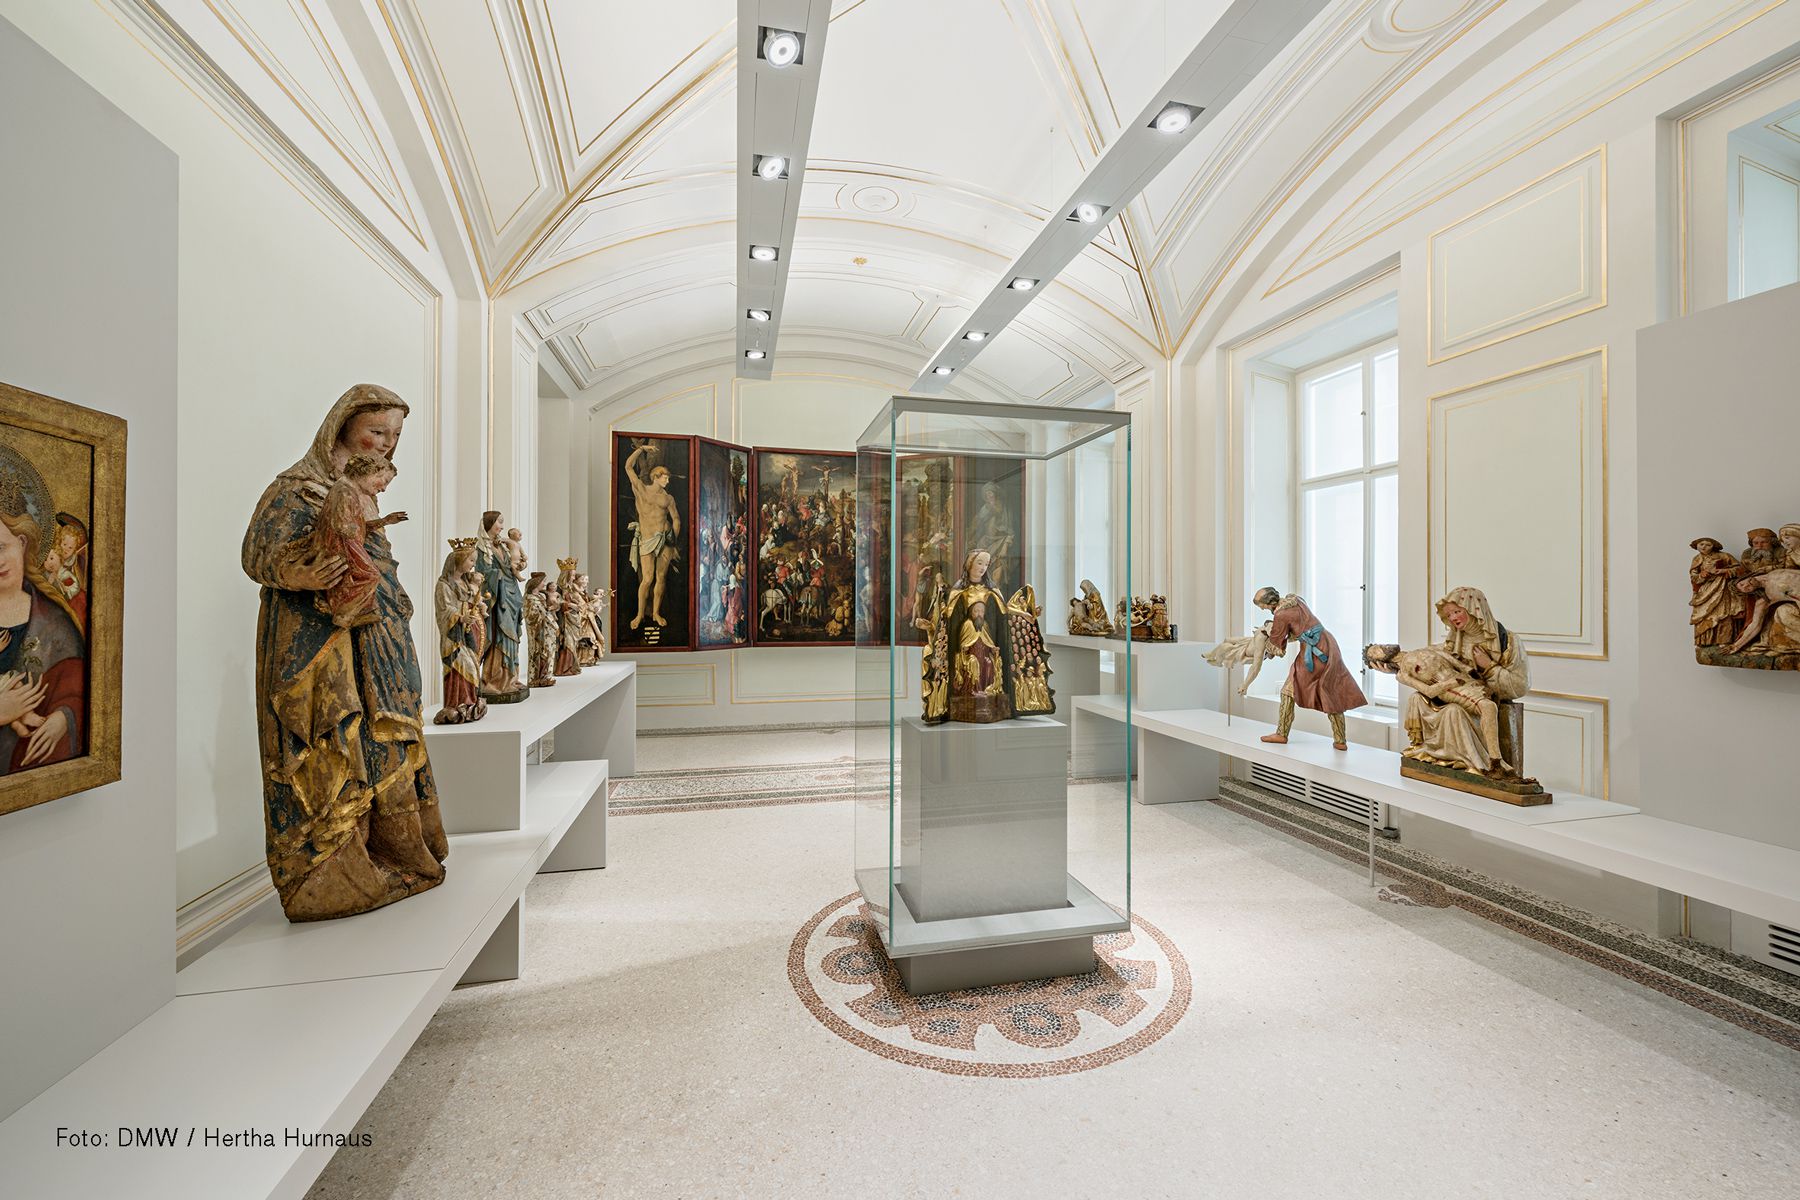 Dom Museum Wien, Innenansicht, verschiedene Skultpuren stehen in der hellen Kapelle